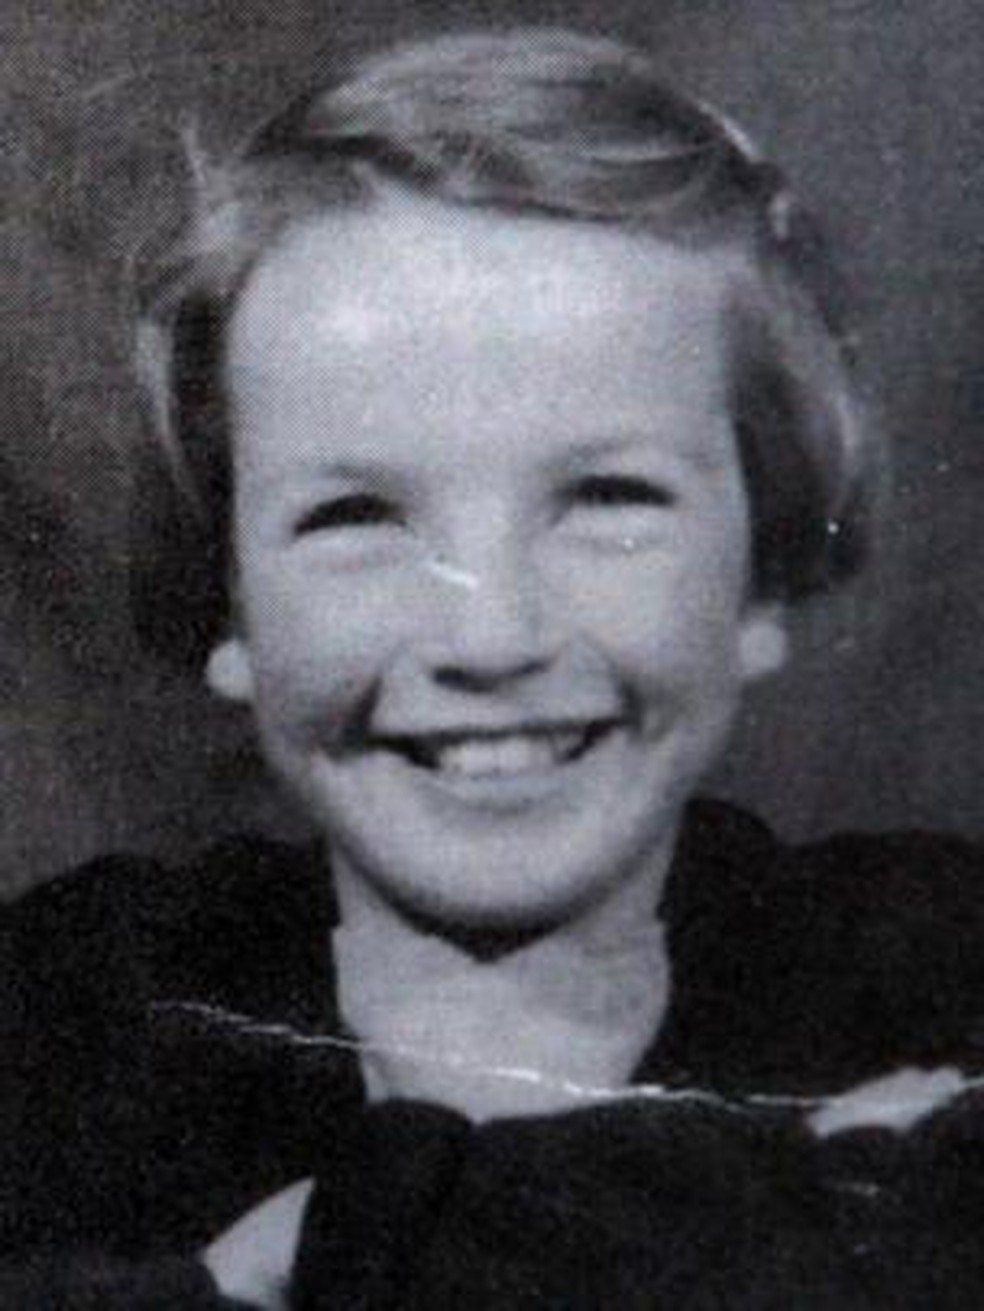 Moira Anderson desapareceu quando tinha 11 anos, em 1957. (Foto: Fundação Moira Anderson / Reuters)